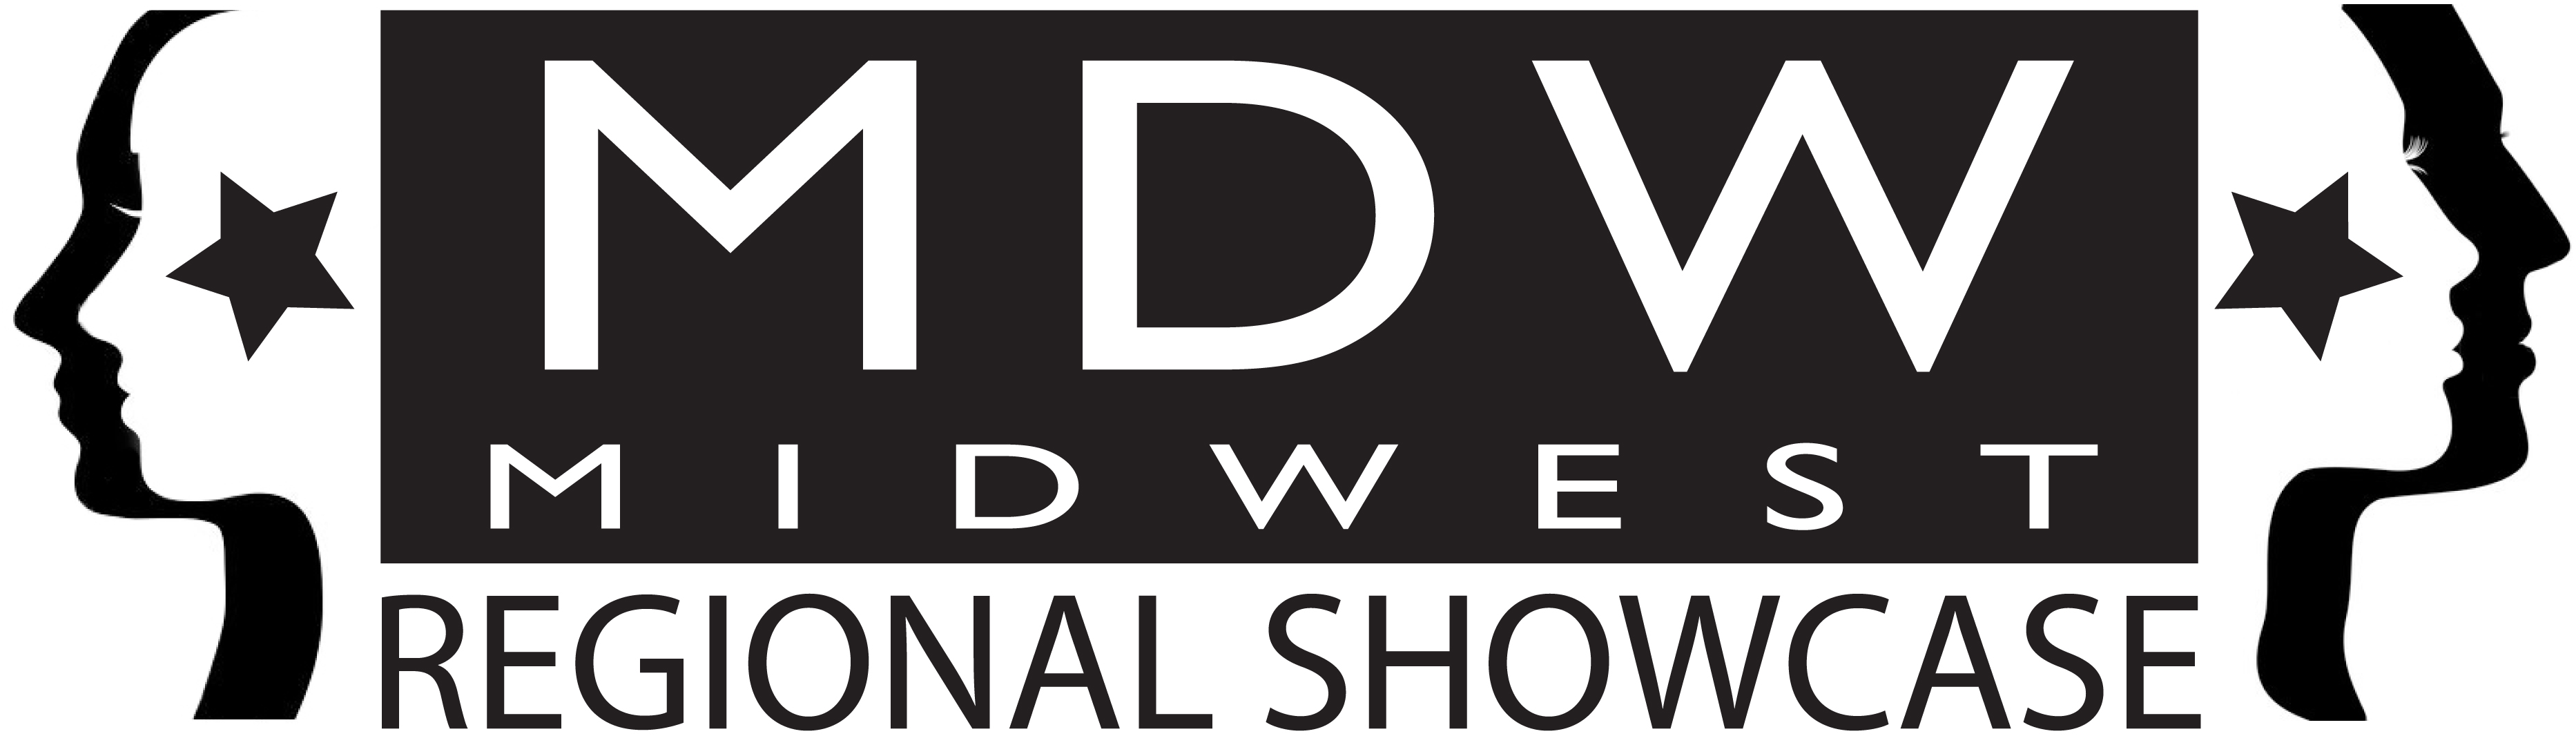 Midwest (MDW) Regional Showcase